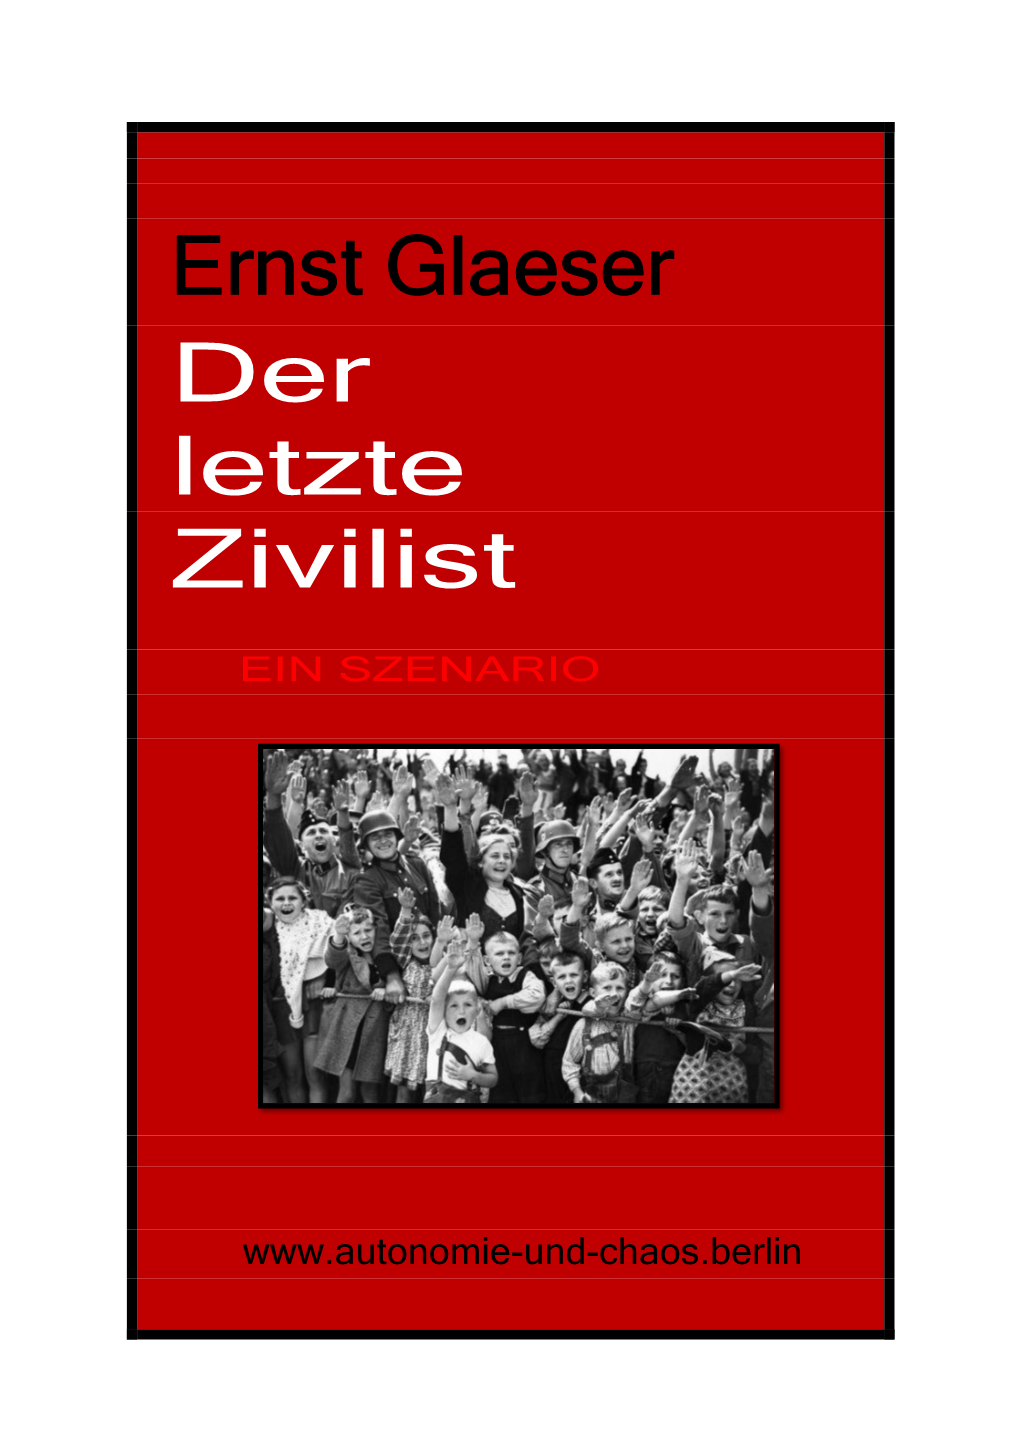 Ernst Glaeser Der Letzte Zivilist